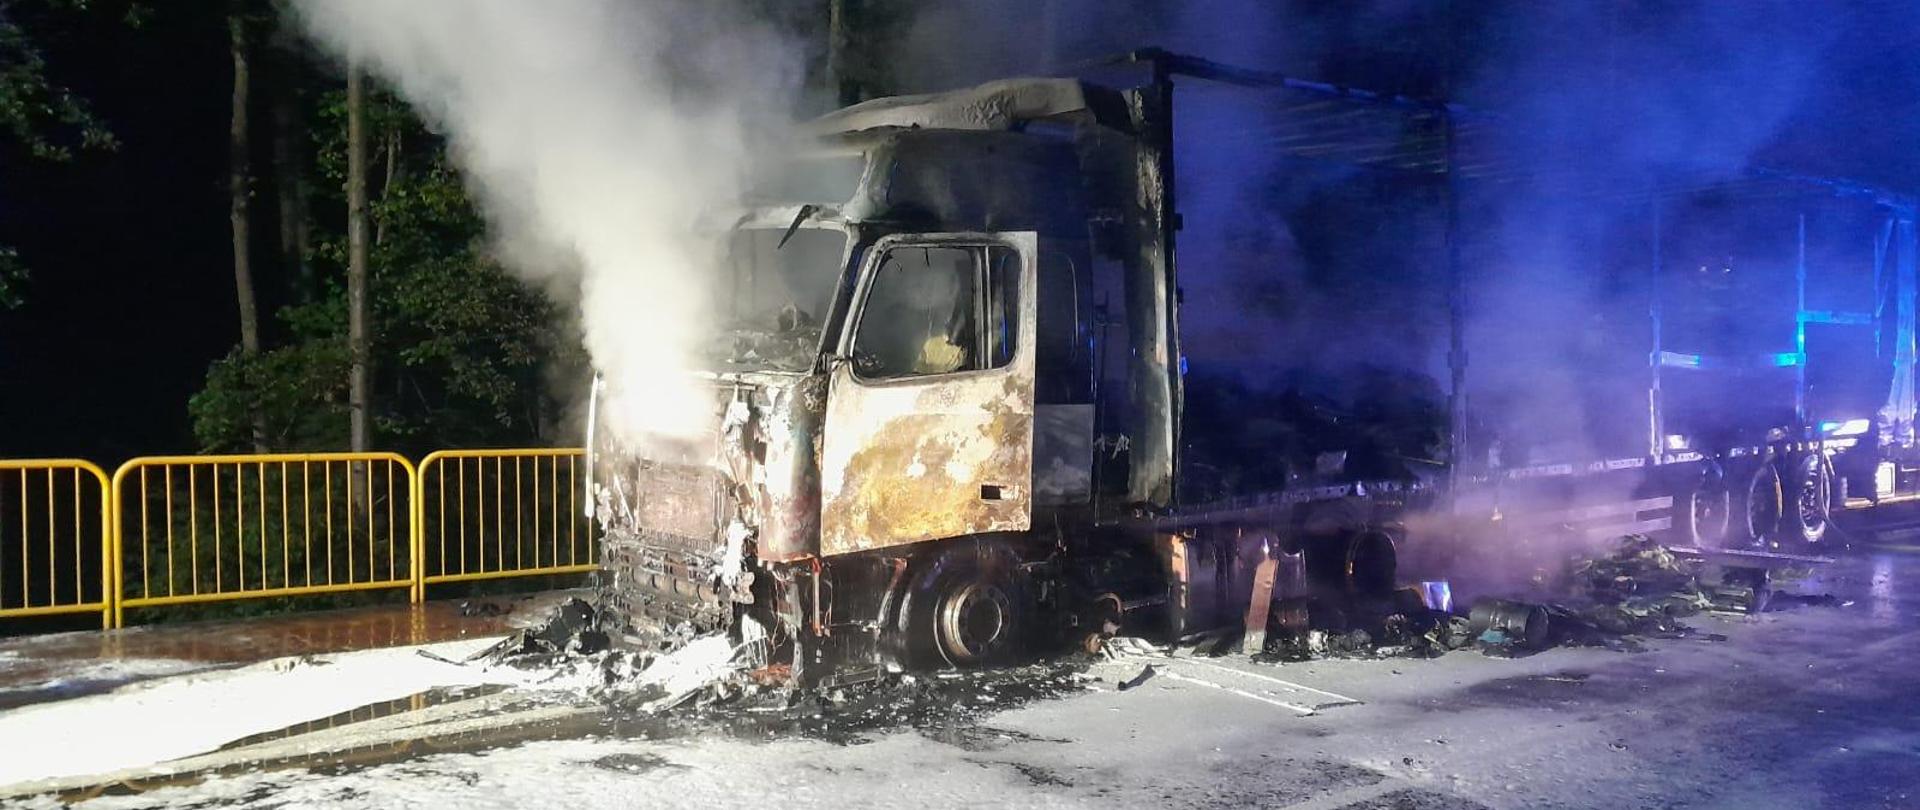 Zdjęcie przedstawia wrak spalonego samochodu ciężarowego.